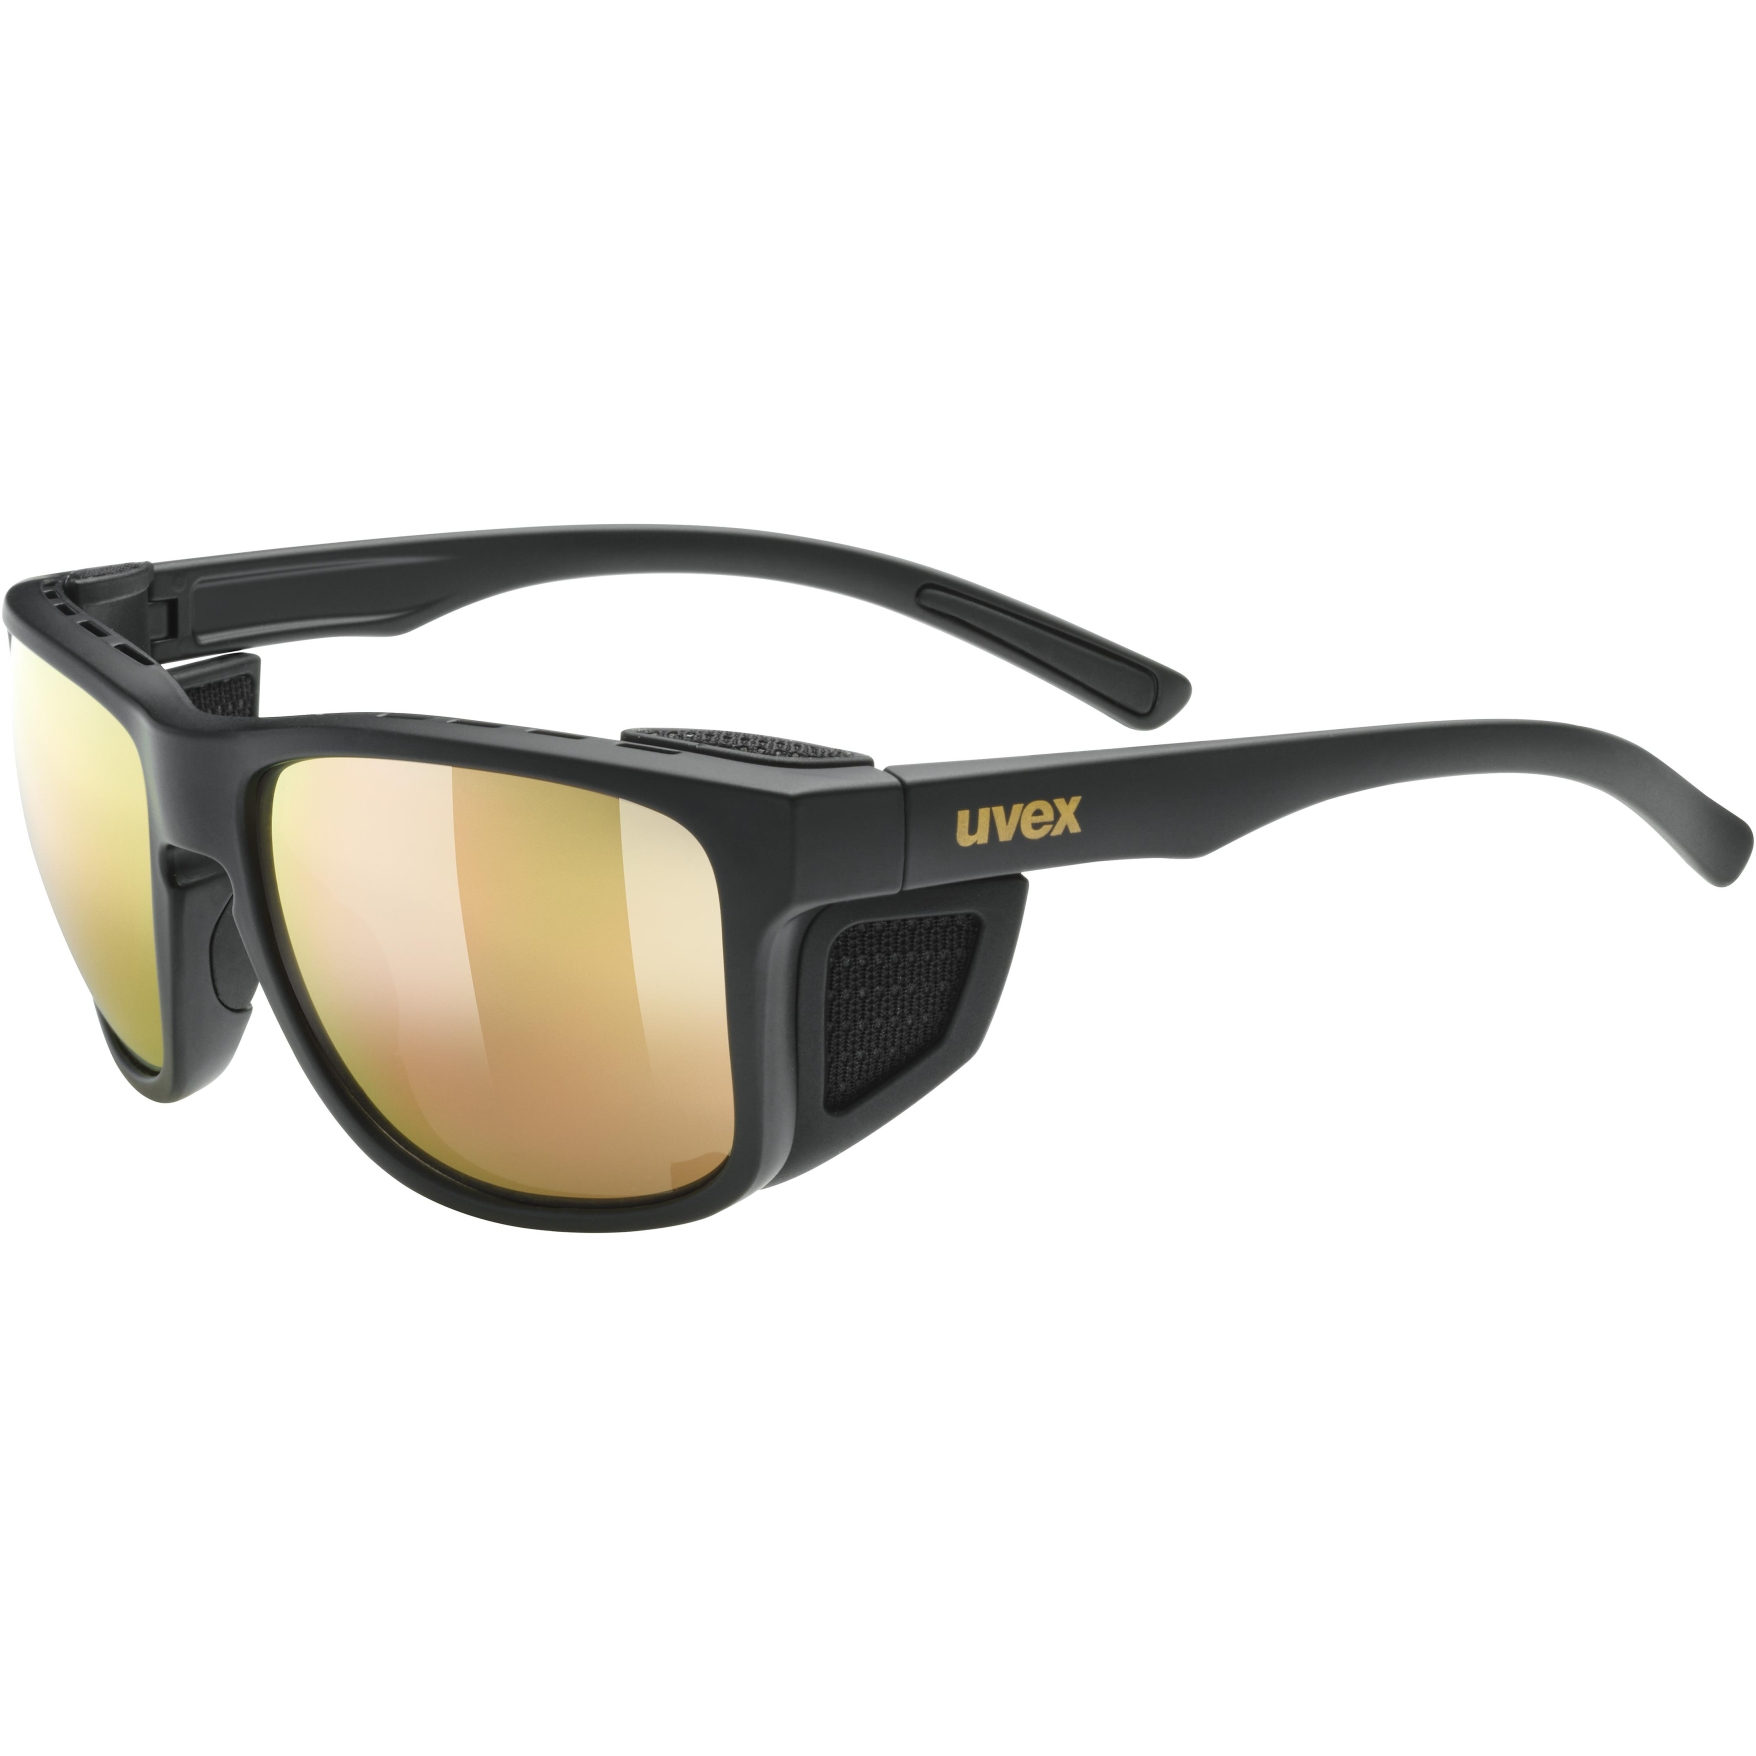 Produktbild von Uvex sportstyle 312 Brille - black mat gold/mirror gold